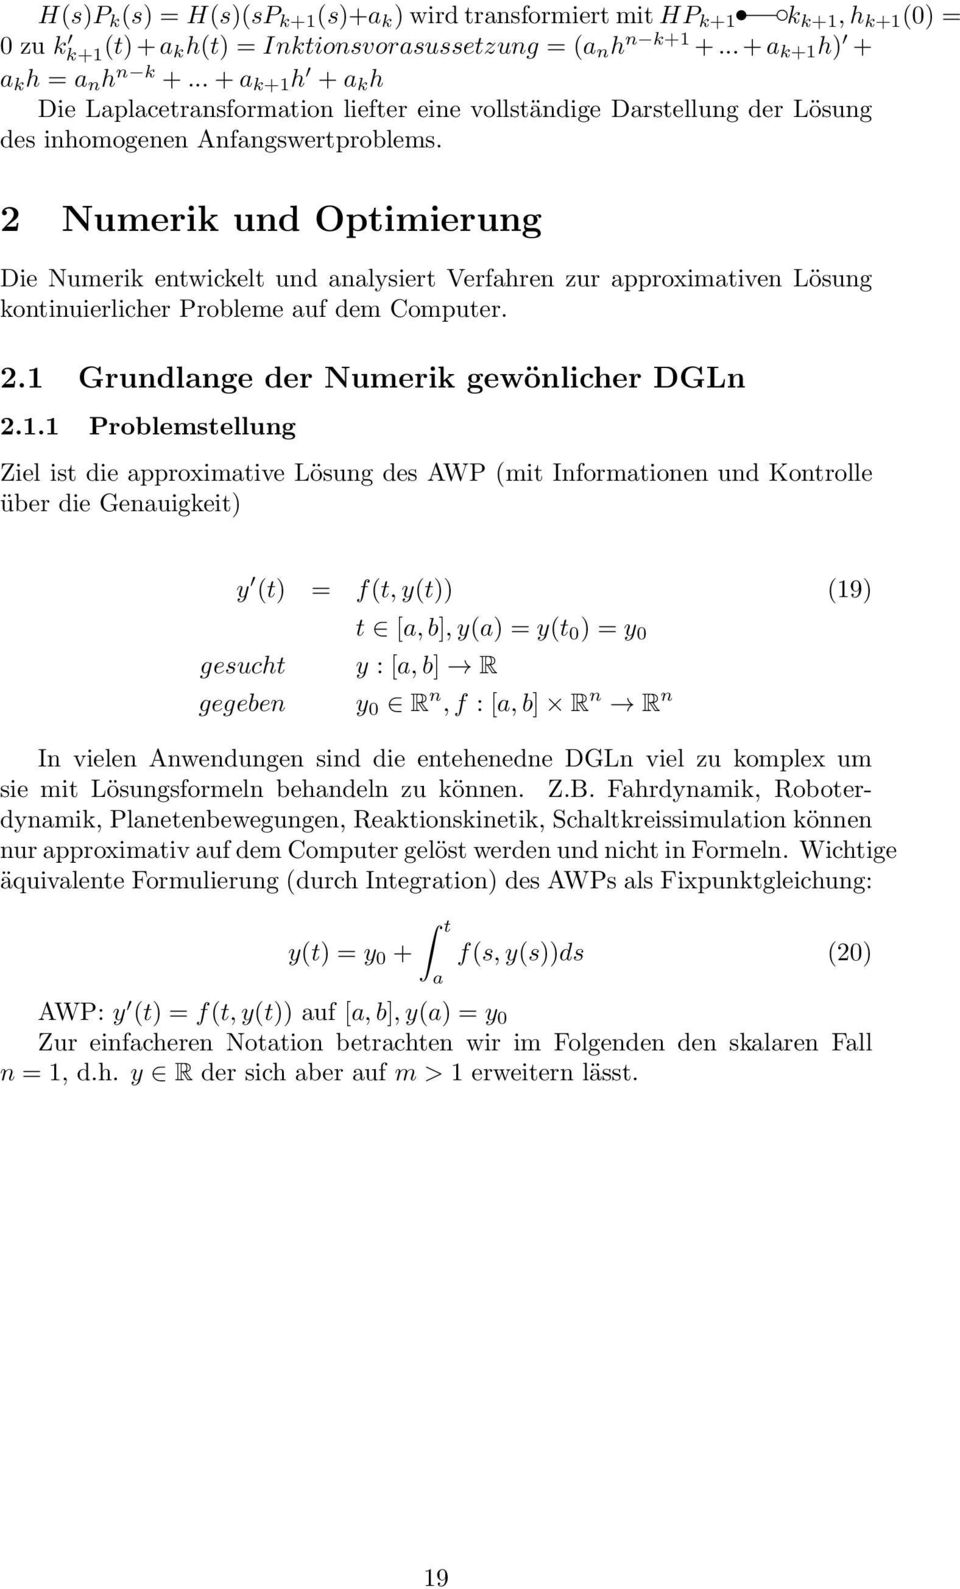 2 Numerik und Optimierung Die Numerik entwickelt und analysiert Verfahren zur approximativen Lösung kontinuierlicher Probleme auf dem Computer. 2. Grundlange der Numerik gewönlicher DGLn 2.